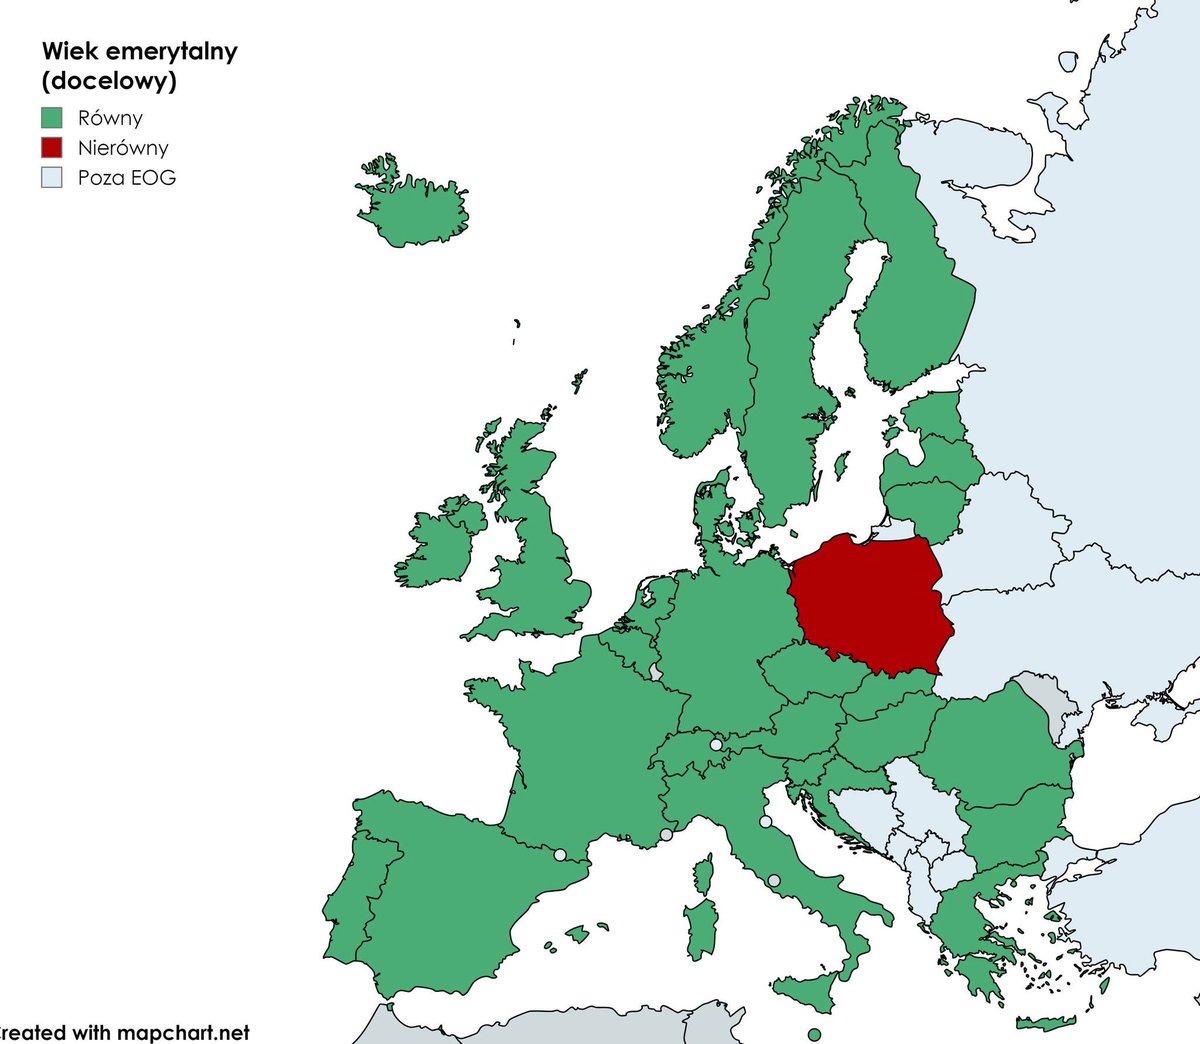 Lista krajów Unii Europejskiej, w których nie zaplanowano wyrównania wieku emerytalnego: 1. Polska